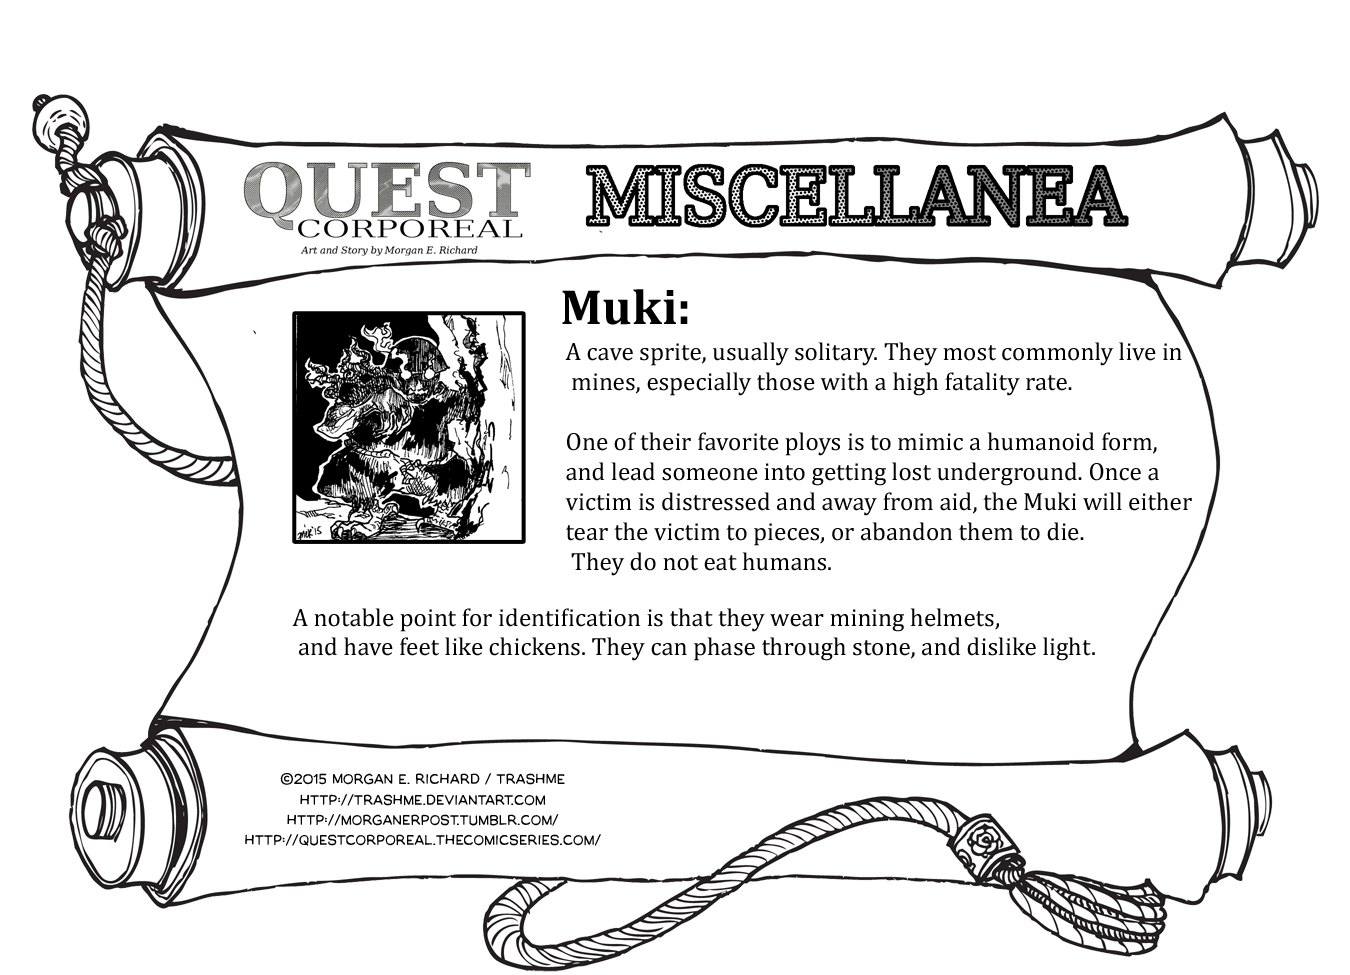 Miscellanea Corporeal: Muki